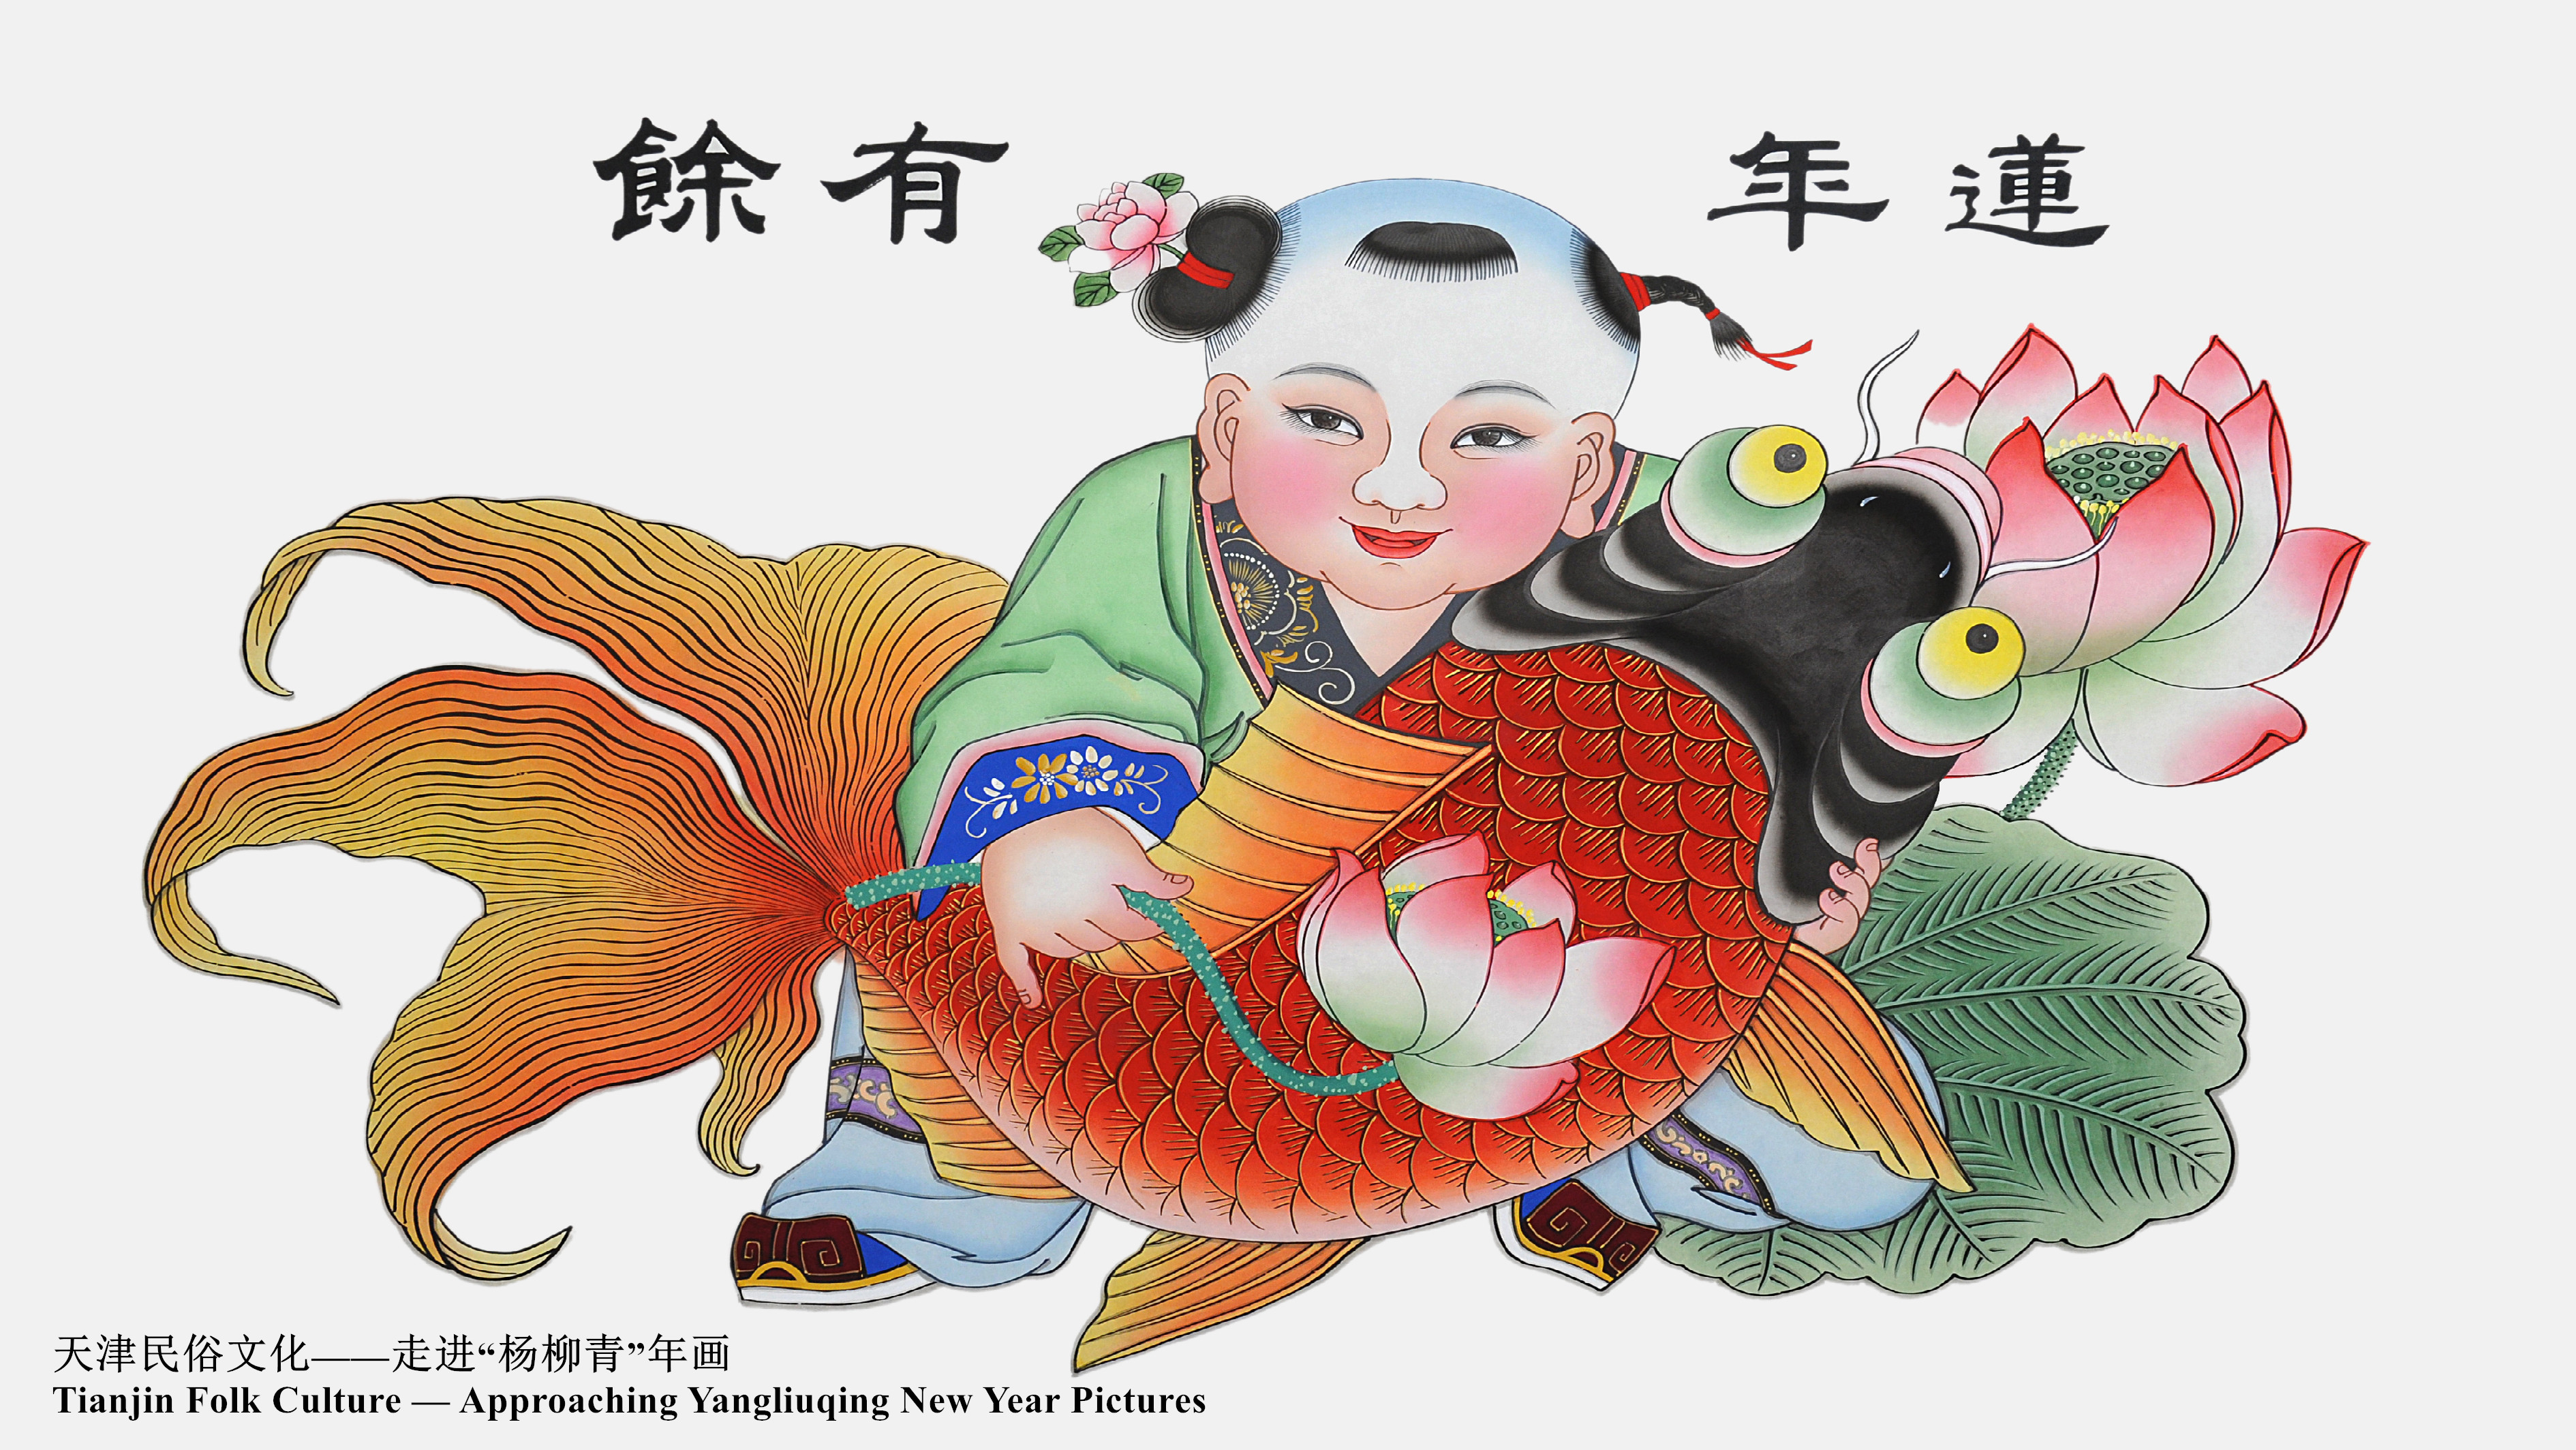 Tianjin Folk Culture - Approaching Yangliuqing New Year Pictures